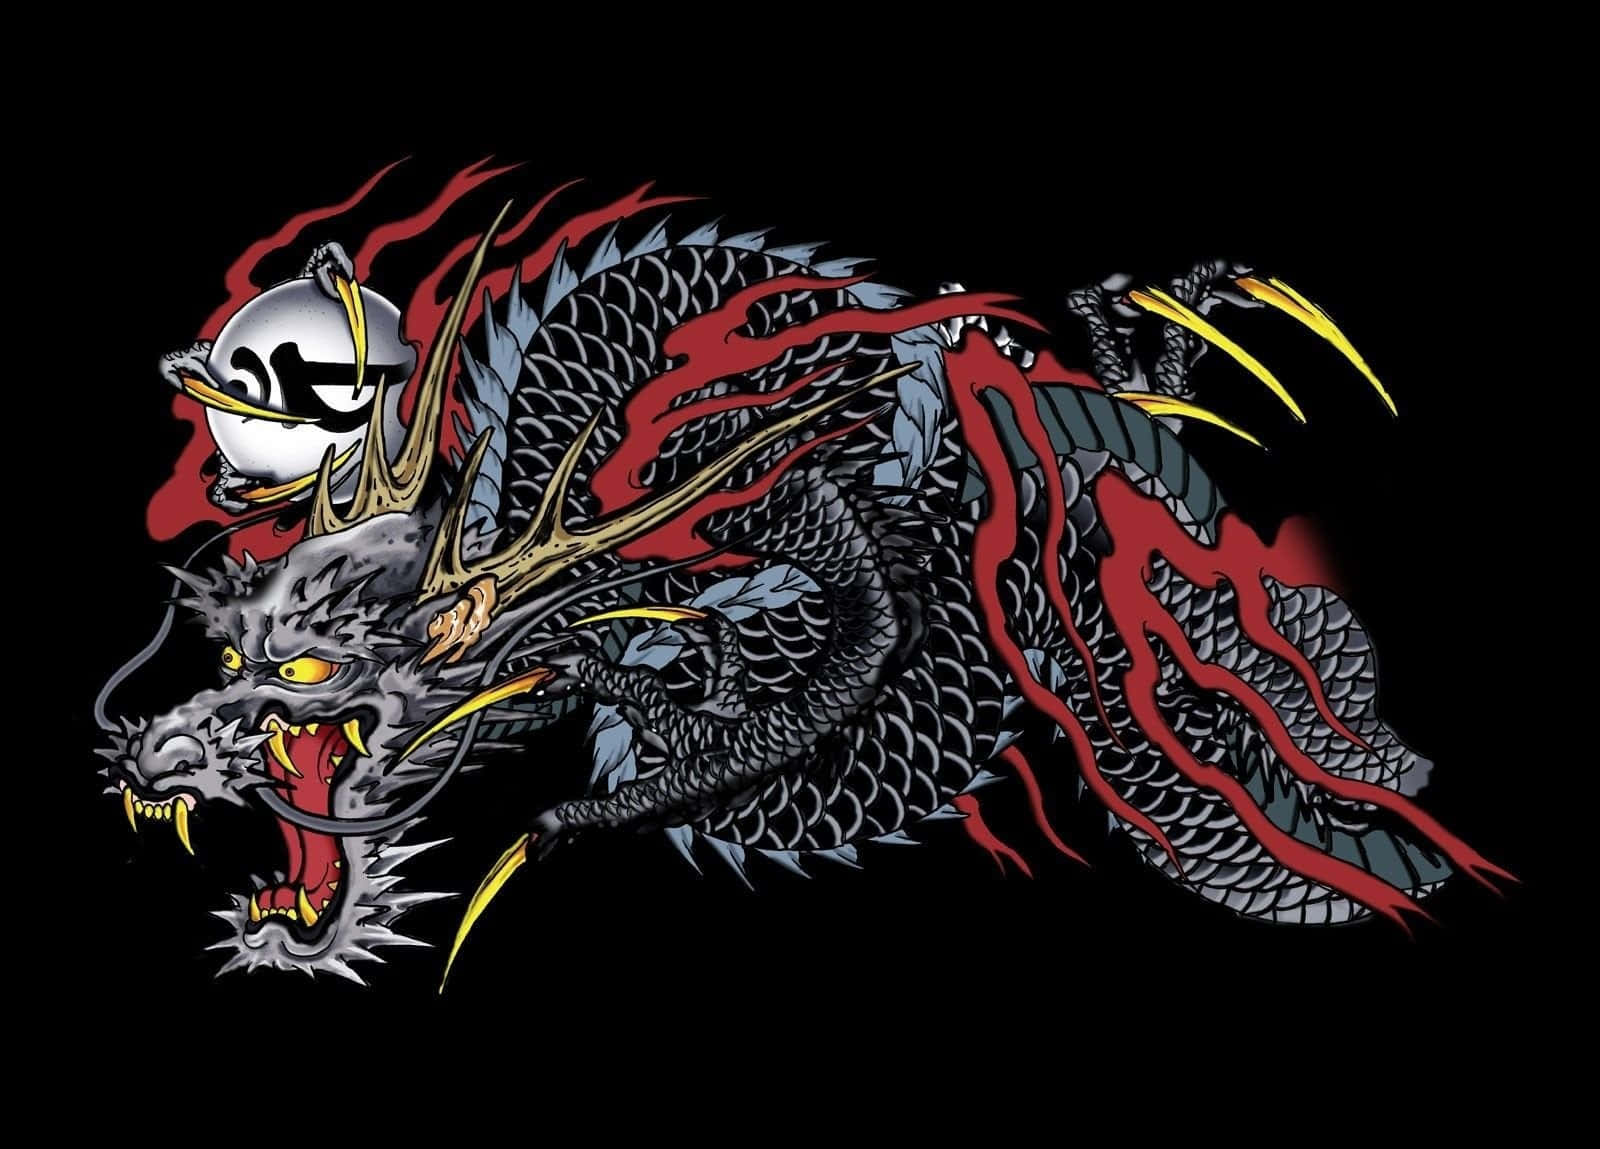 Λ ｒｋ  Commissions open  on Twitter Im in love with my custom Kiryu  dragon I got today  yakuza dragontattoo kiryu  httpstcoK3P9iOvqHl  Twitter